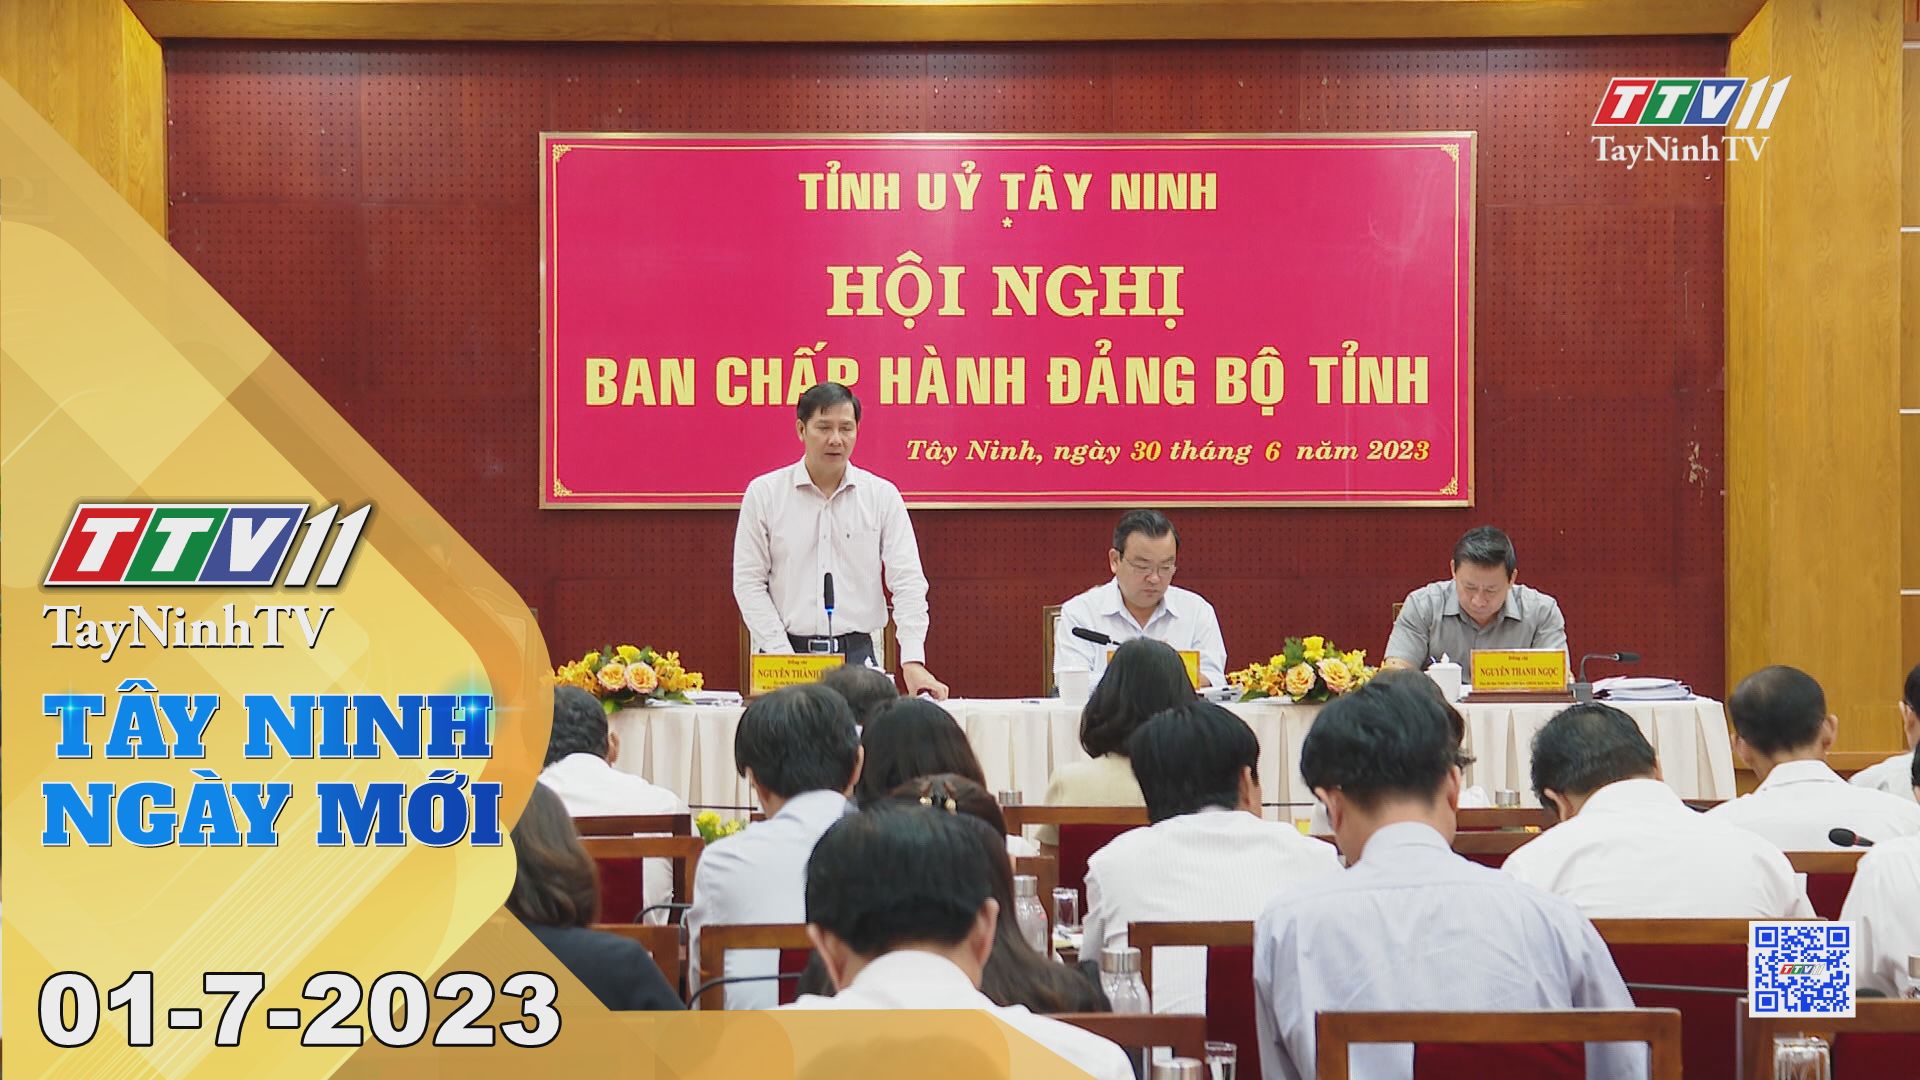 Tây Ninh ngày mới 01-7-2023 | Tin tức hôm nay | TayNinhTV